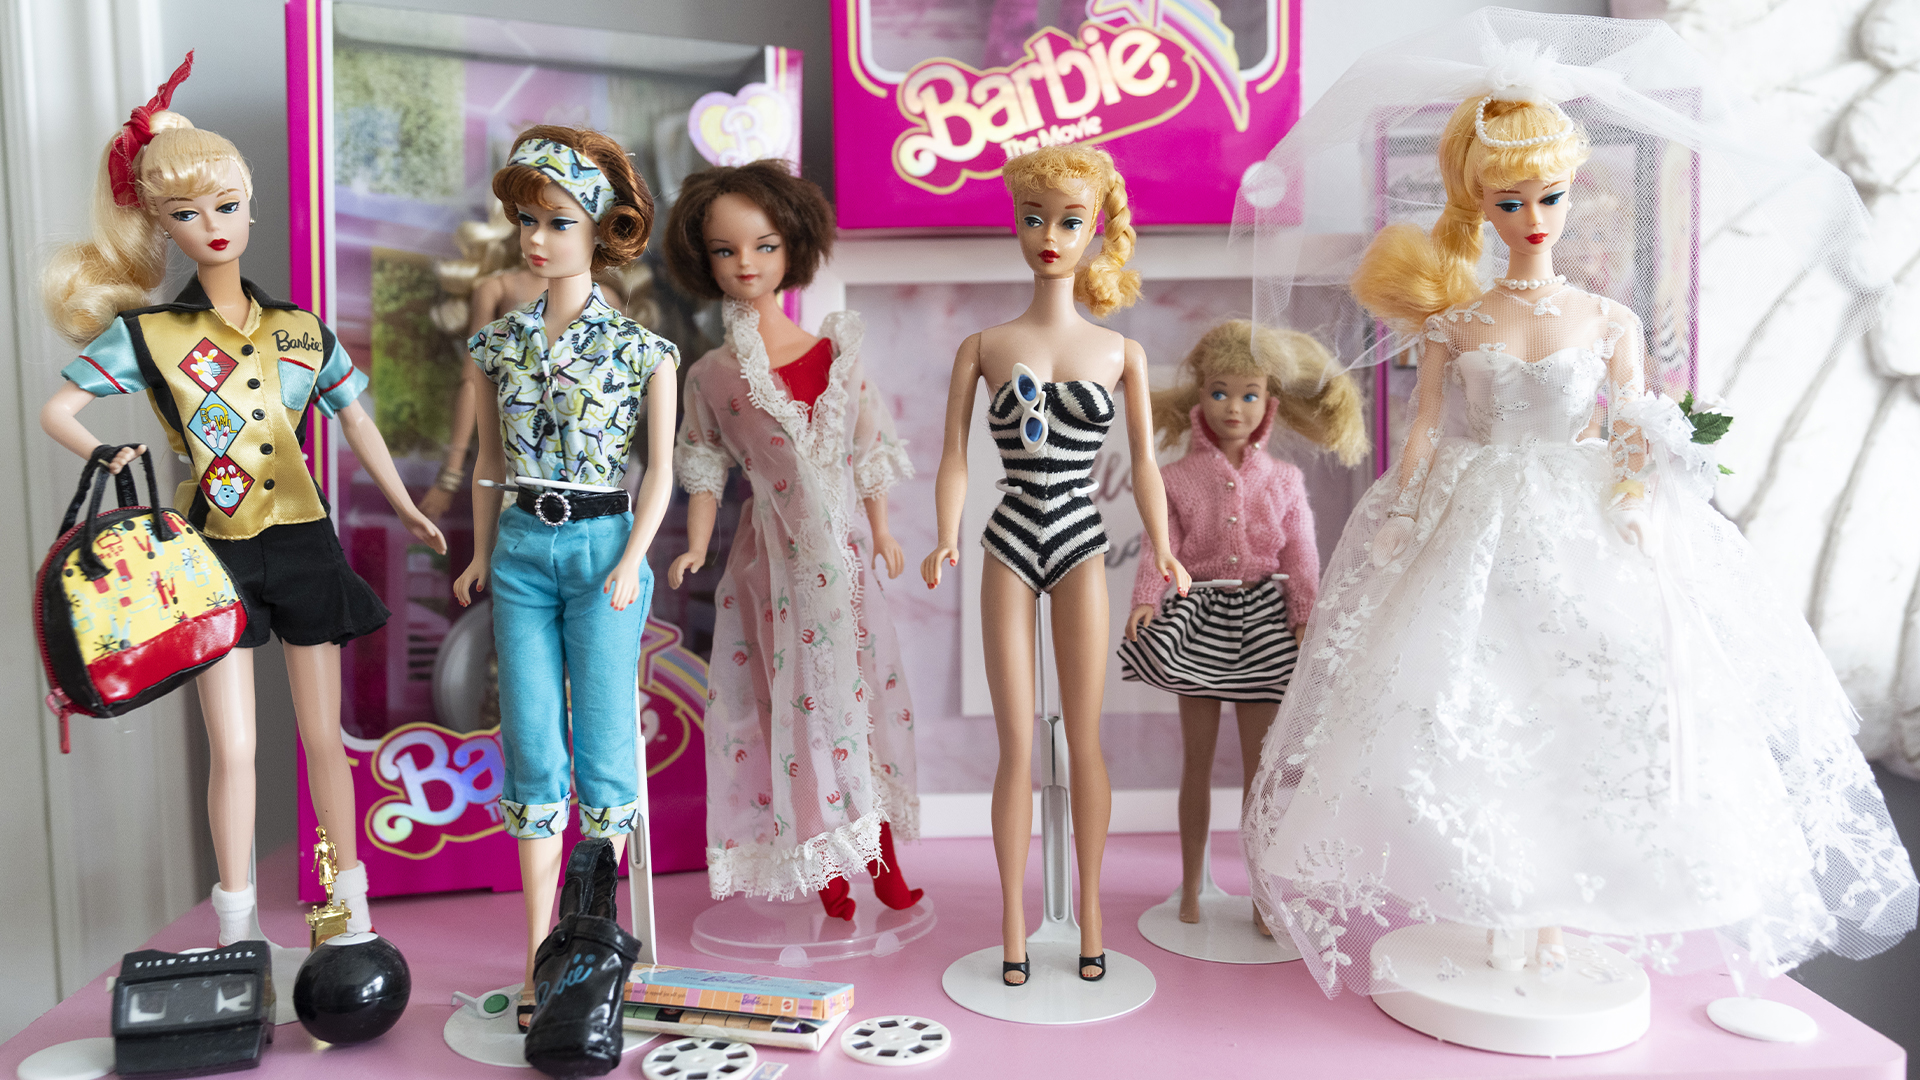 Le film «Barbie» marque-t-il le moment de gloire de la poupée Ken?